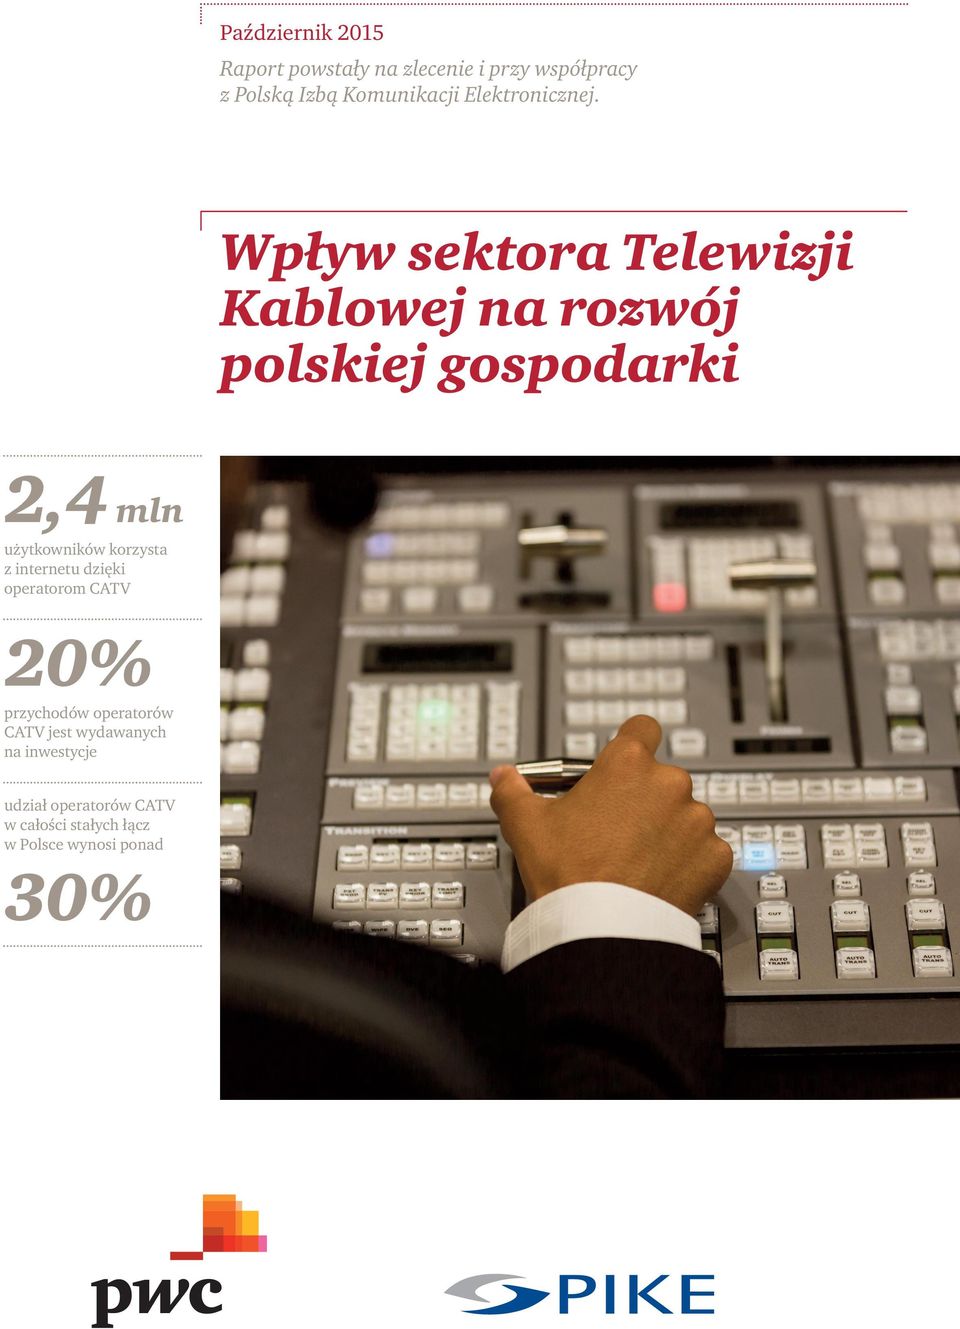 Wpływ sektora Telewizji Kablowej na rozwój polskiej gospodarki 2,4 mln użytkowników